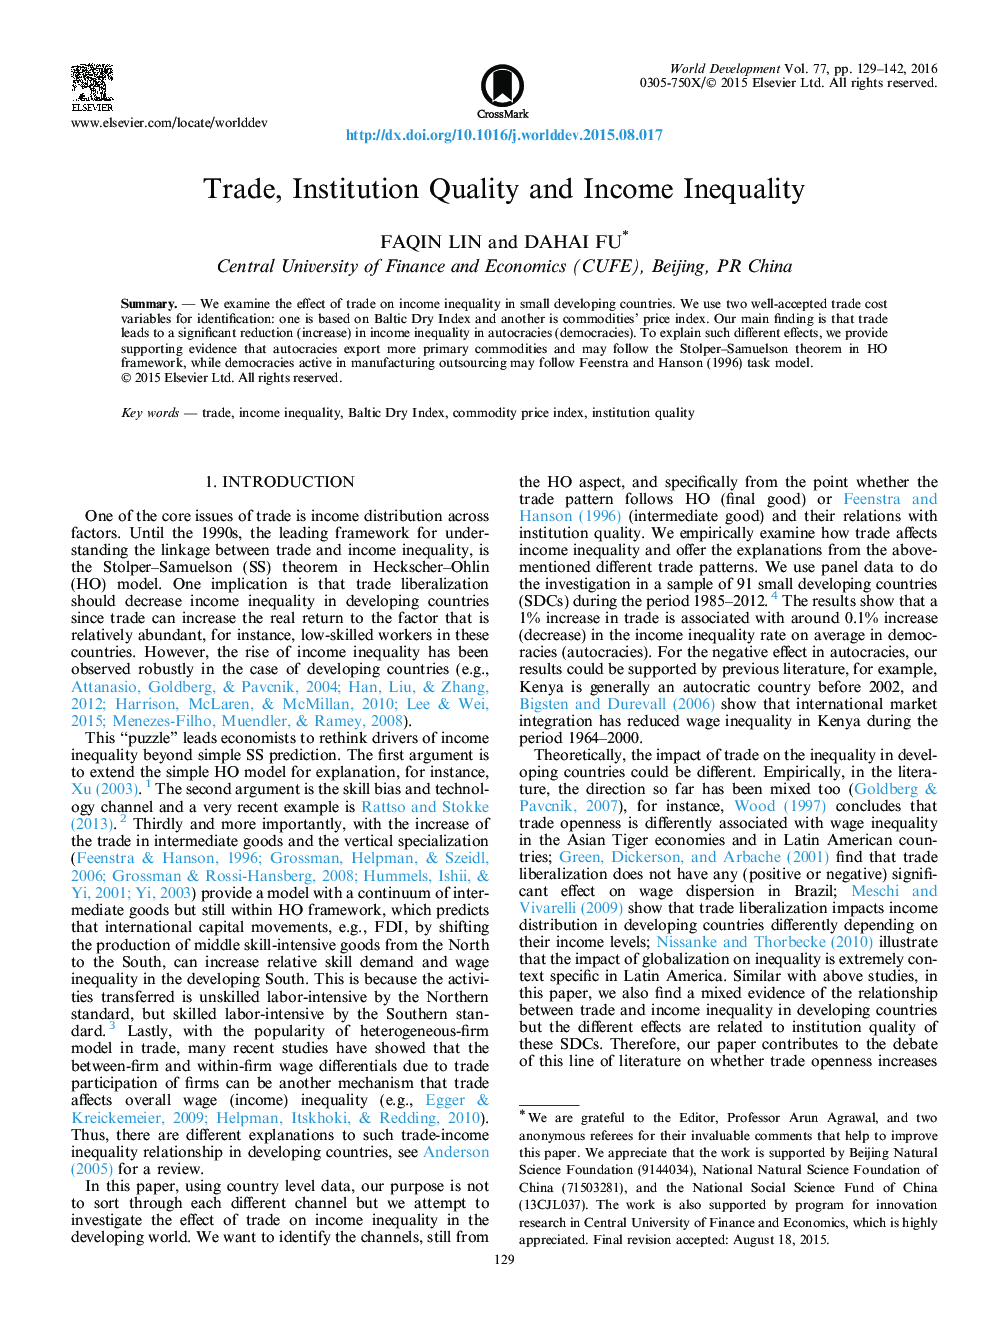 تجارت، کیفیت موسسه و نابرابری درآمد 